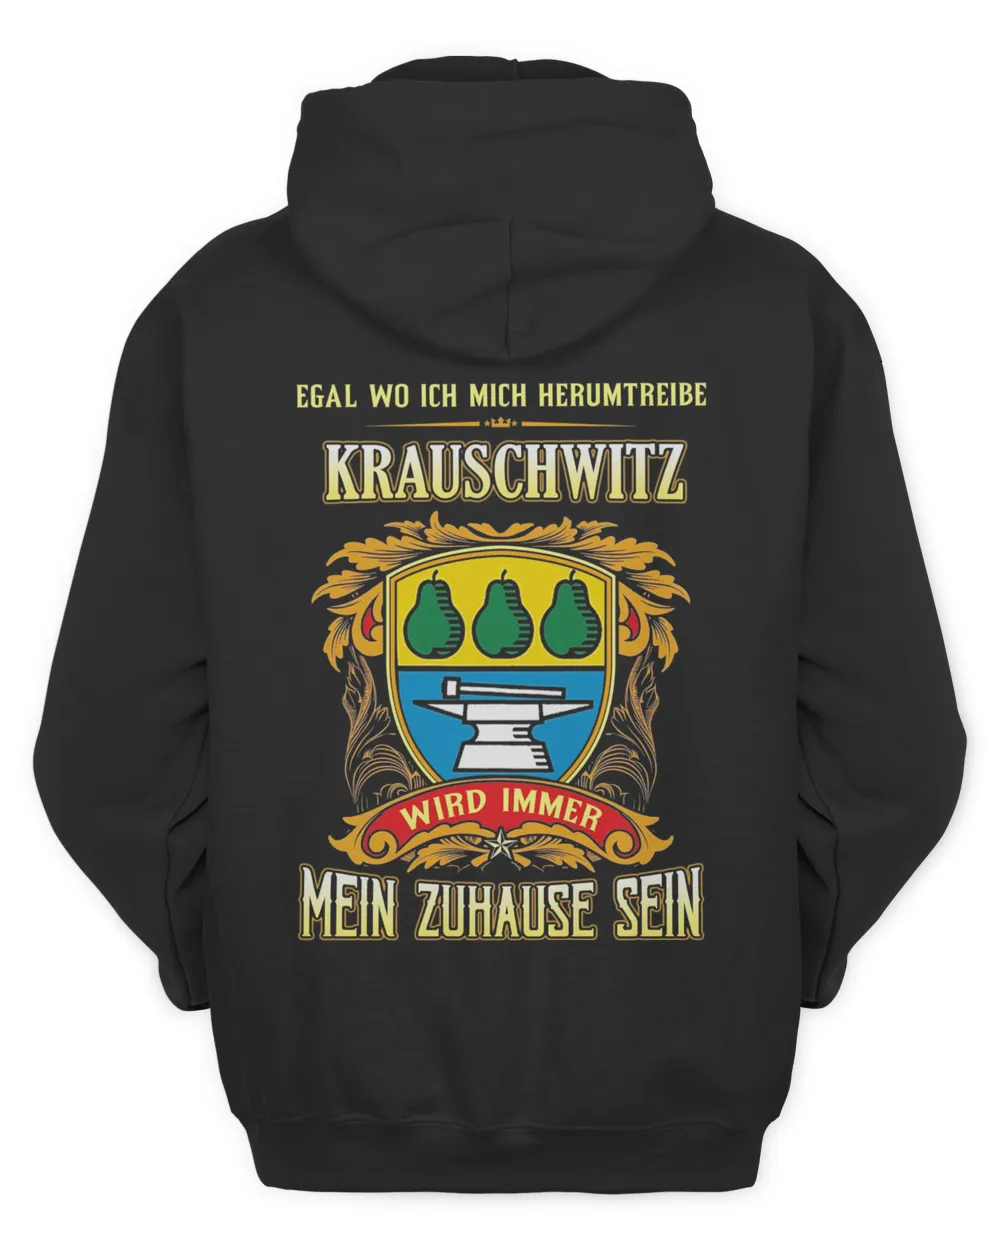 Egal Wo Ich Mich Herumtreibe Krauschwitz Wird Immer Mein Zuhause Sein Shirt